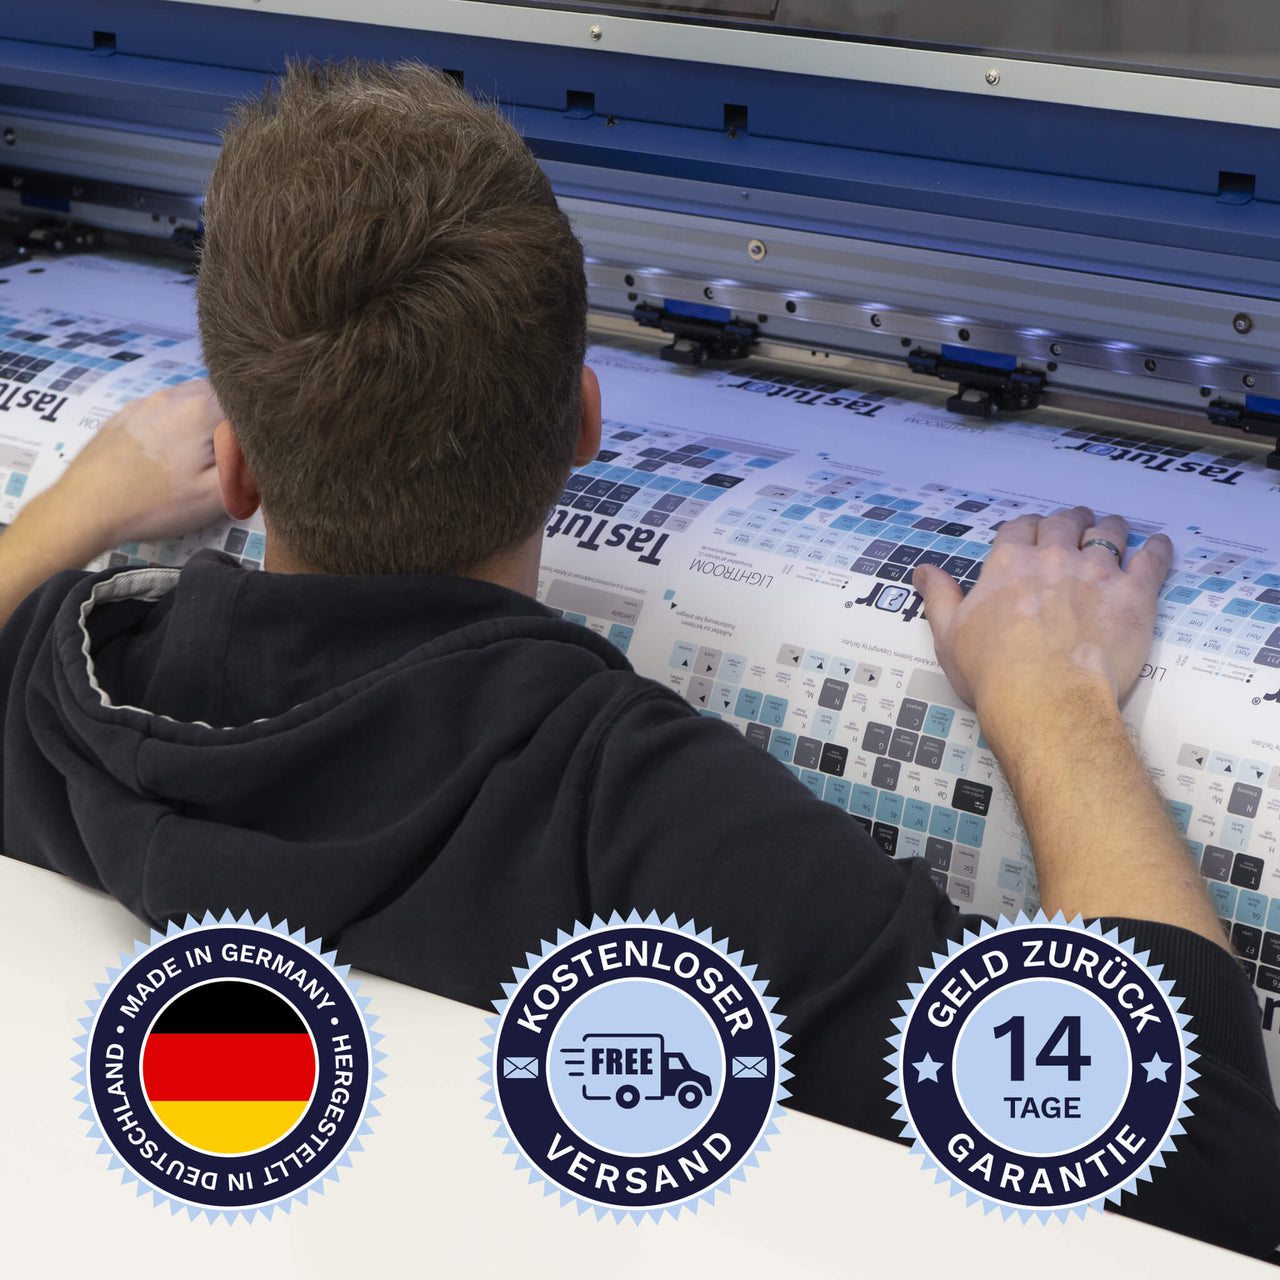 Englische Tastaturaufkleber werden in Deutschland hergestellt. Der Versand ist kostenlos und wir gewährleisten 14 Tage Geld zurück Garantie | TasTutor